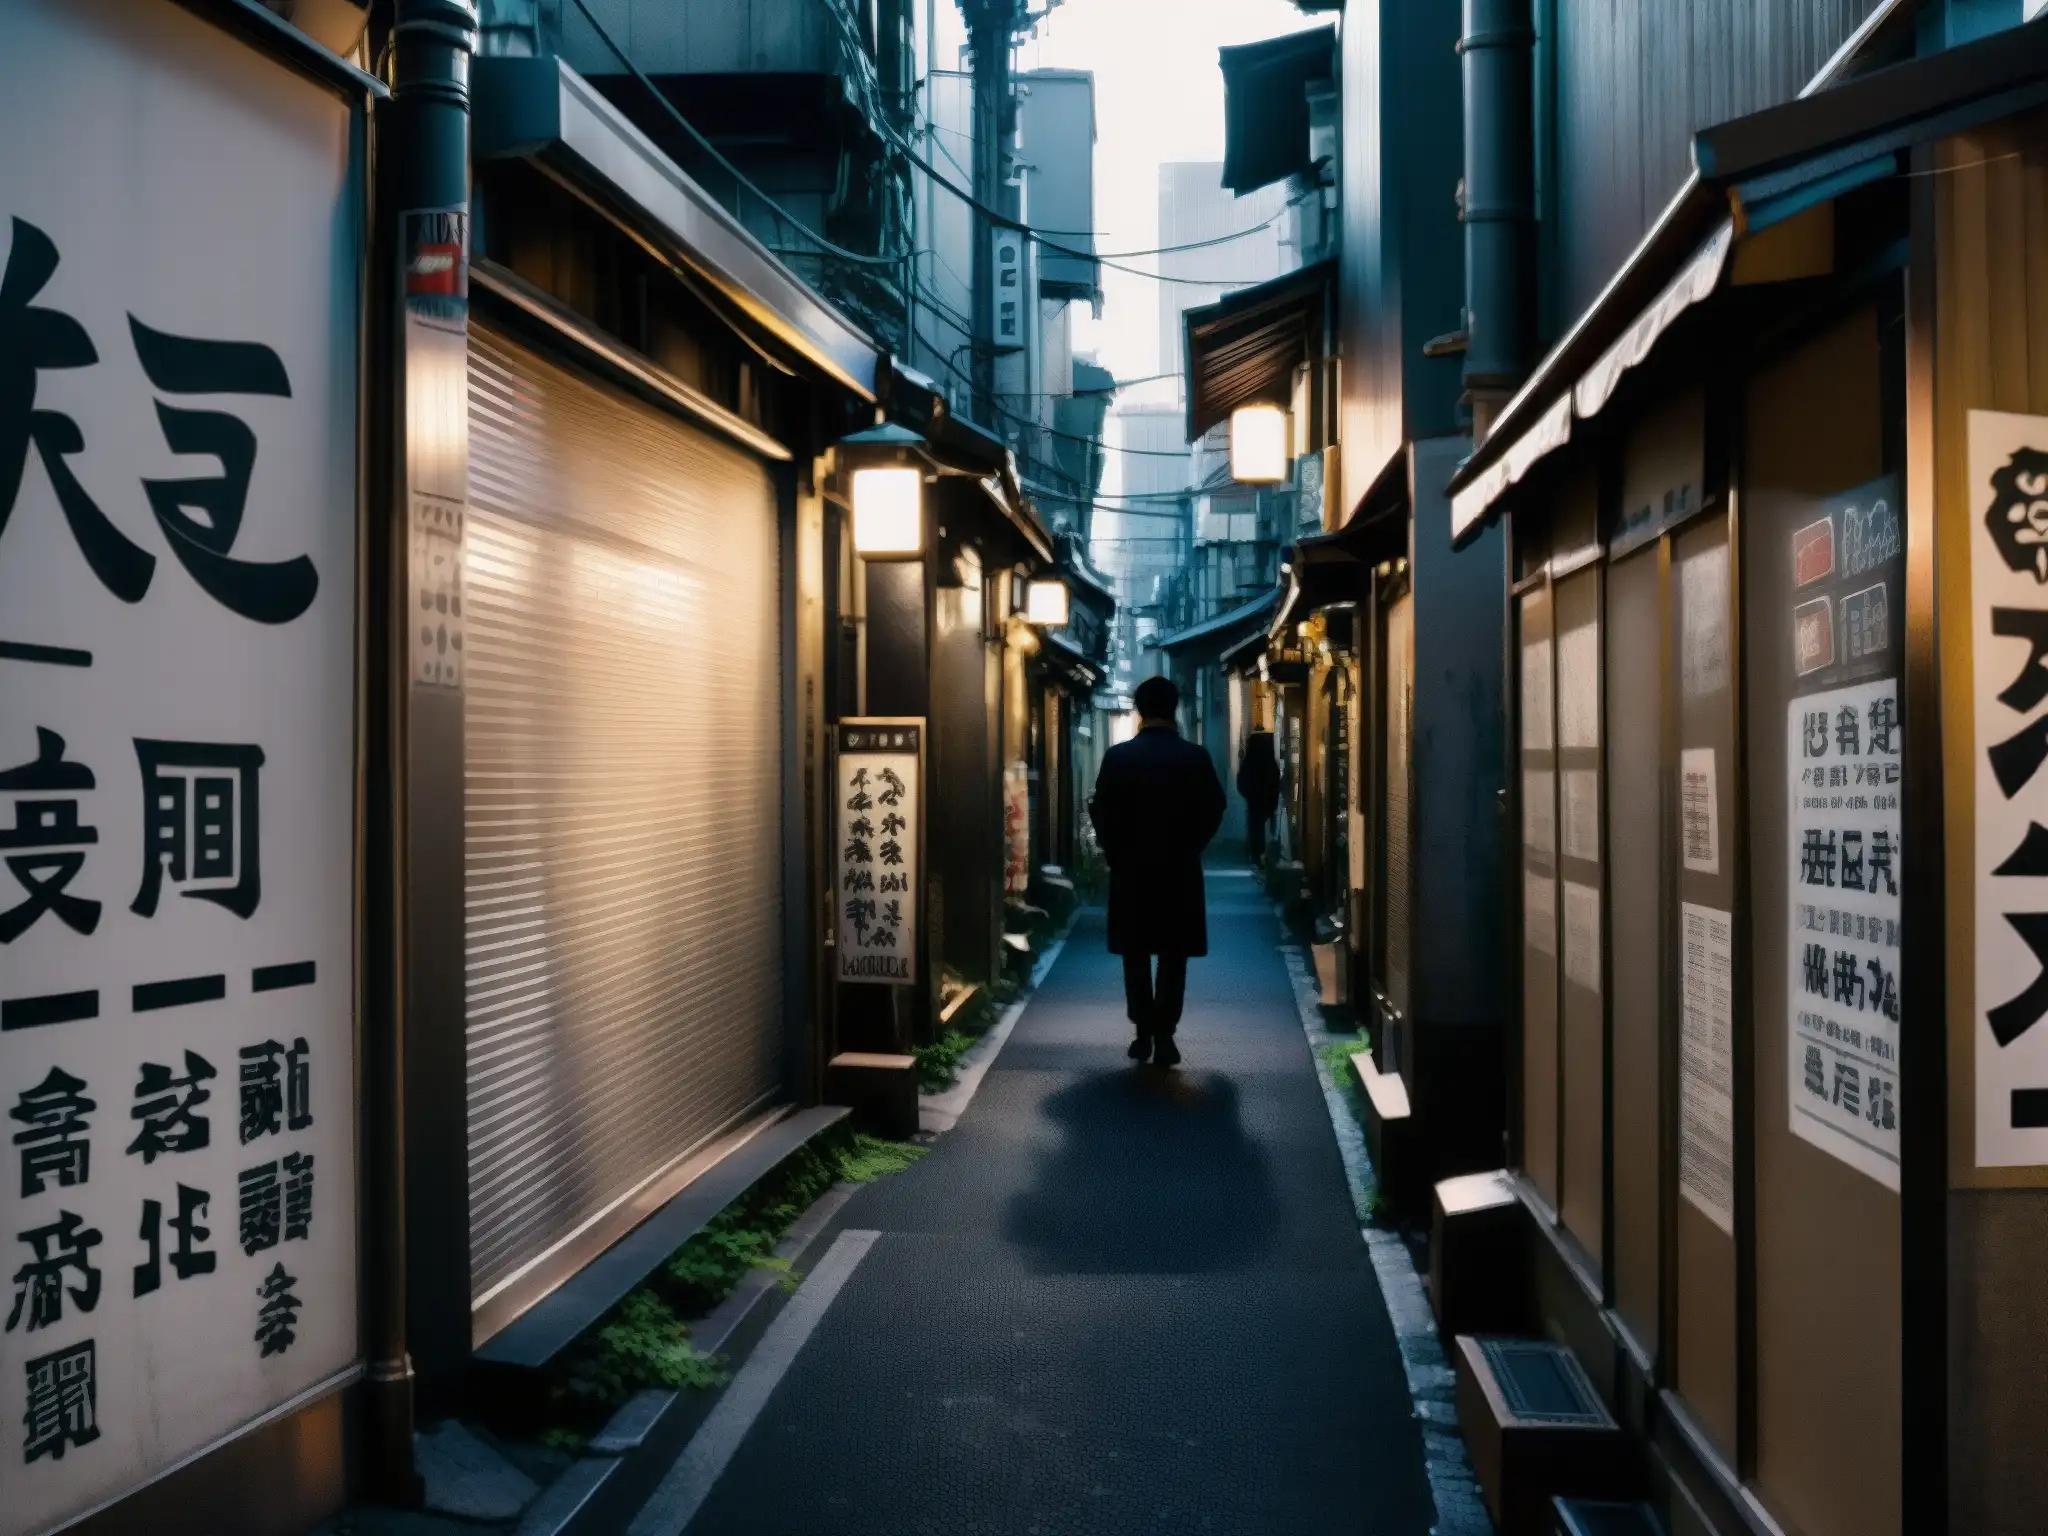 Un callejón sombrío de Tokio con edificios antiguos y figuras misteriosas, evocando leyendas urbanas japonesas y foros online